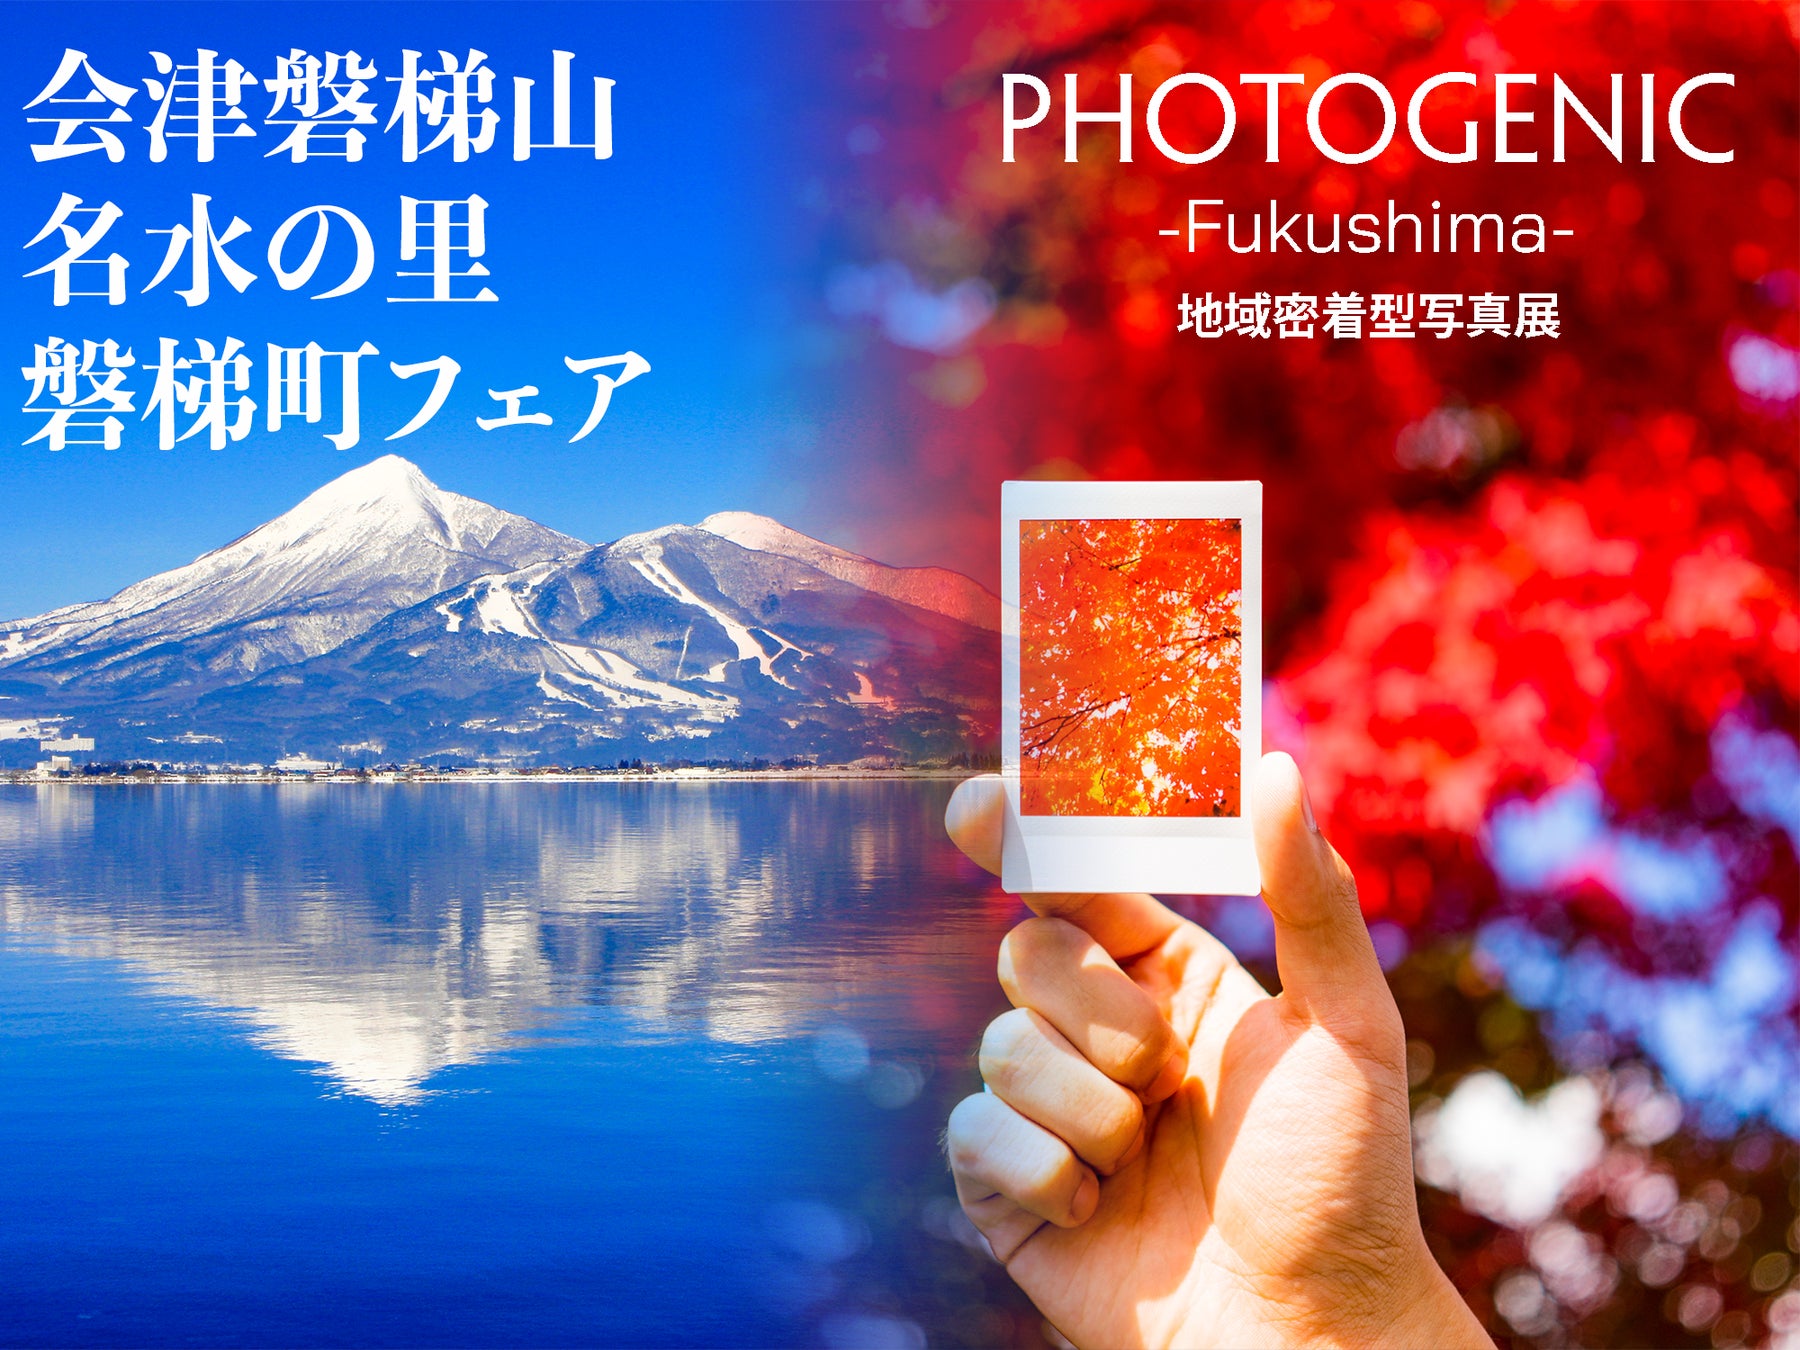 福島の魅力を余すことなく伝える【PHOTOGENIC -Fukushima-】2023年1月4日・5日、KITTE地下1階「東京シティアイ」にて開催！